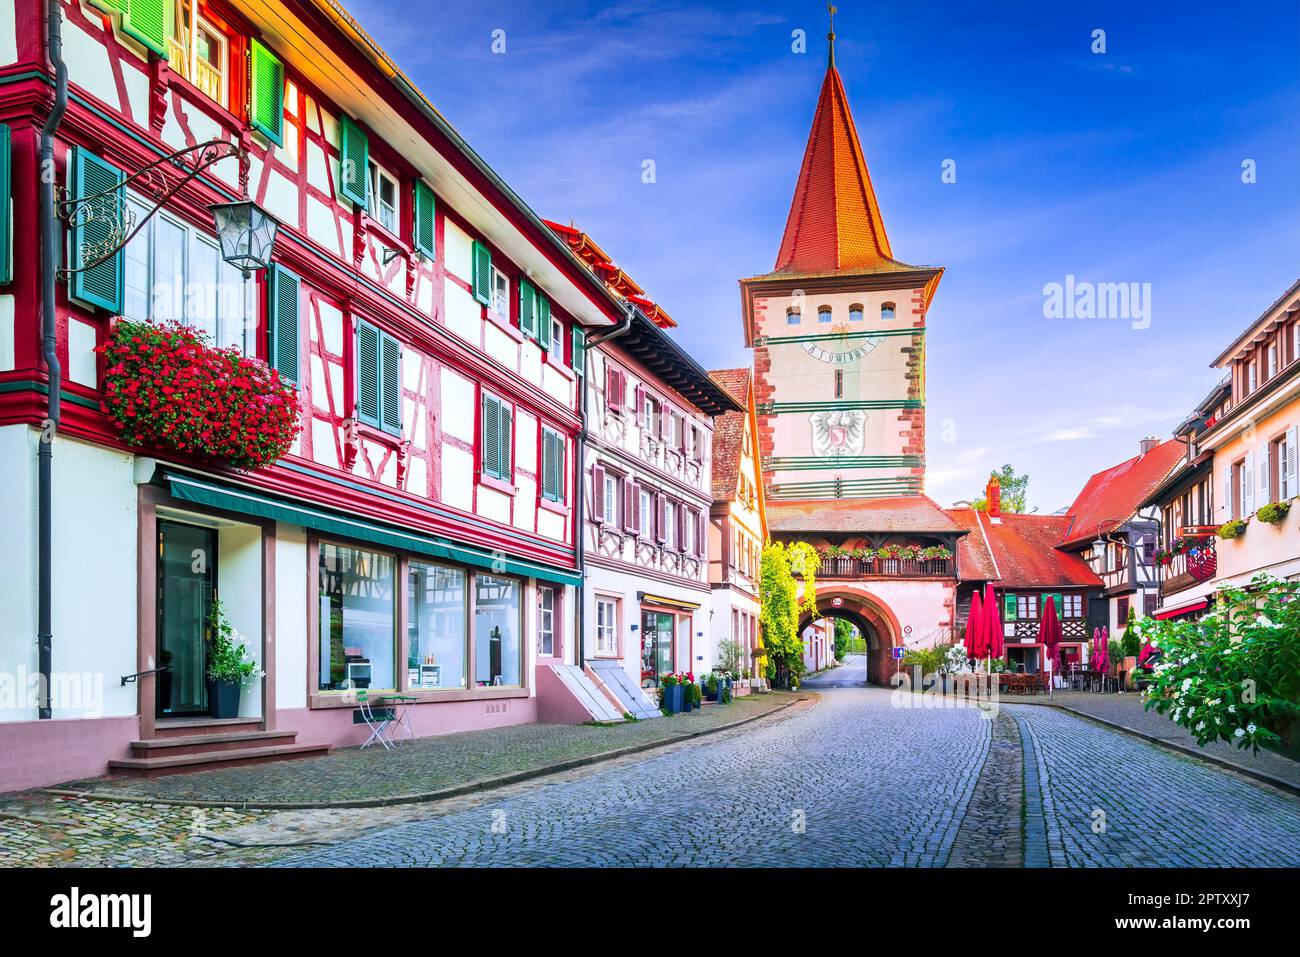 Gengenbach, Allemagne. Charmante ville dans la Forêt Noire avec tour Obertorturm et maison colorée à pans de bois décorée de fleurs. Banque D'Images